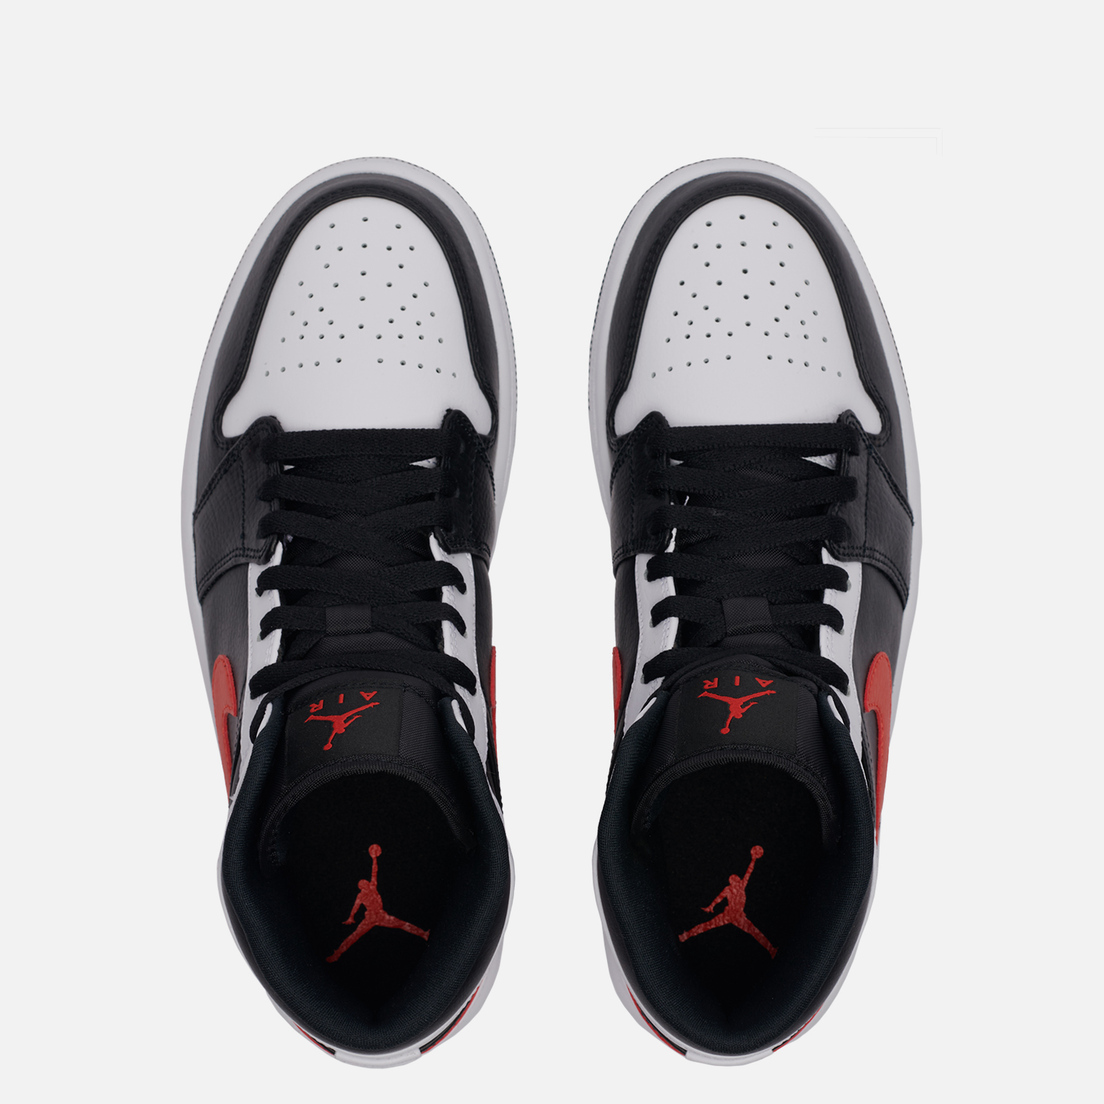 Jordan Мужские кроссовки Air Jordan 1 Mid